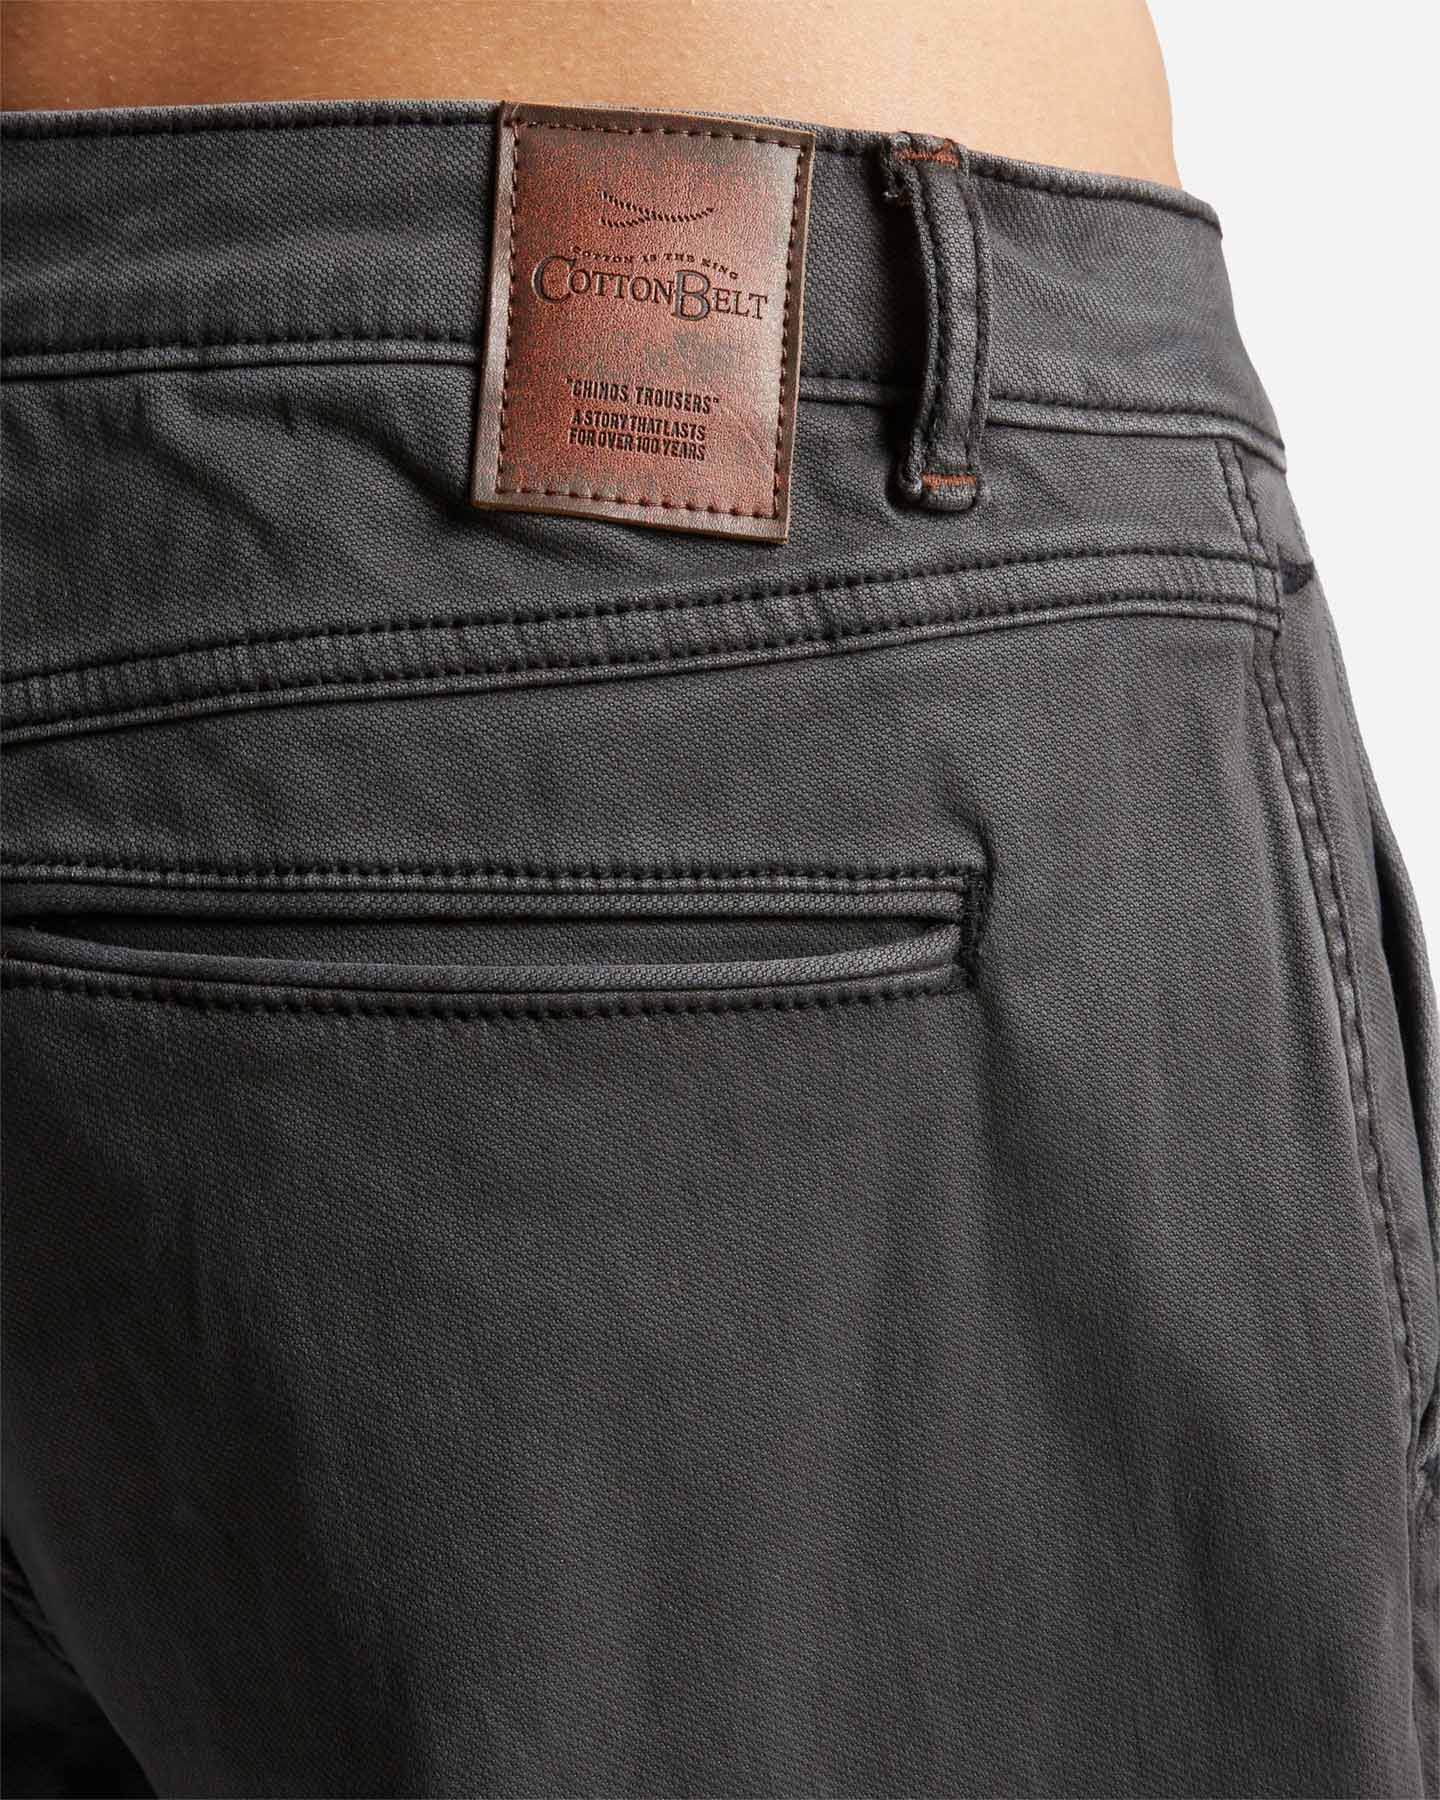  Pantalone COTTON BELT CHINO HYBRID M S4127004|910|32 scatto 3